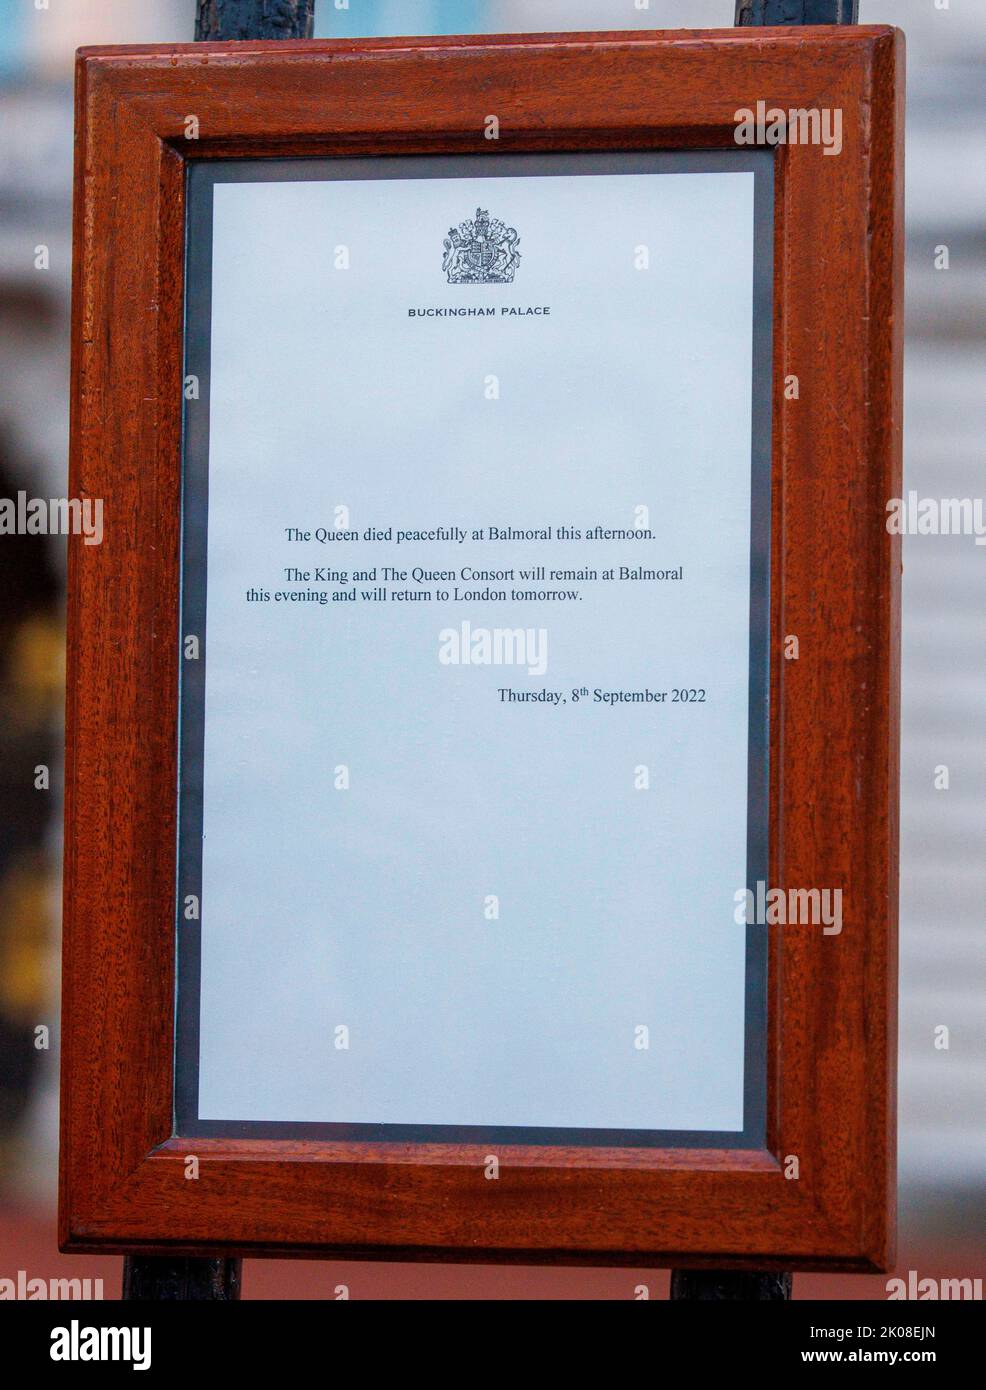 Staffelei im Buckingham Palace, die den Tod Ihrer Majestät der Königin in Balmoral ankündigt: „Die Königin starb heute Nachmittag friedlich in Balmoral“. Stockfoto